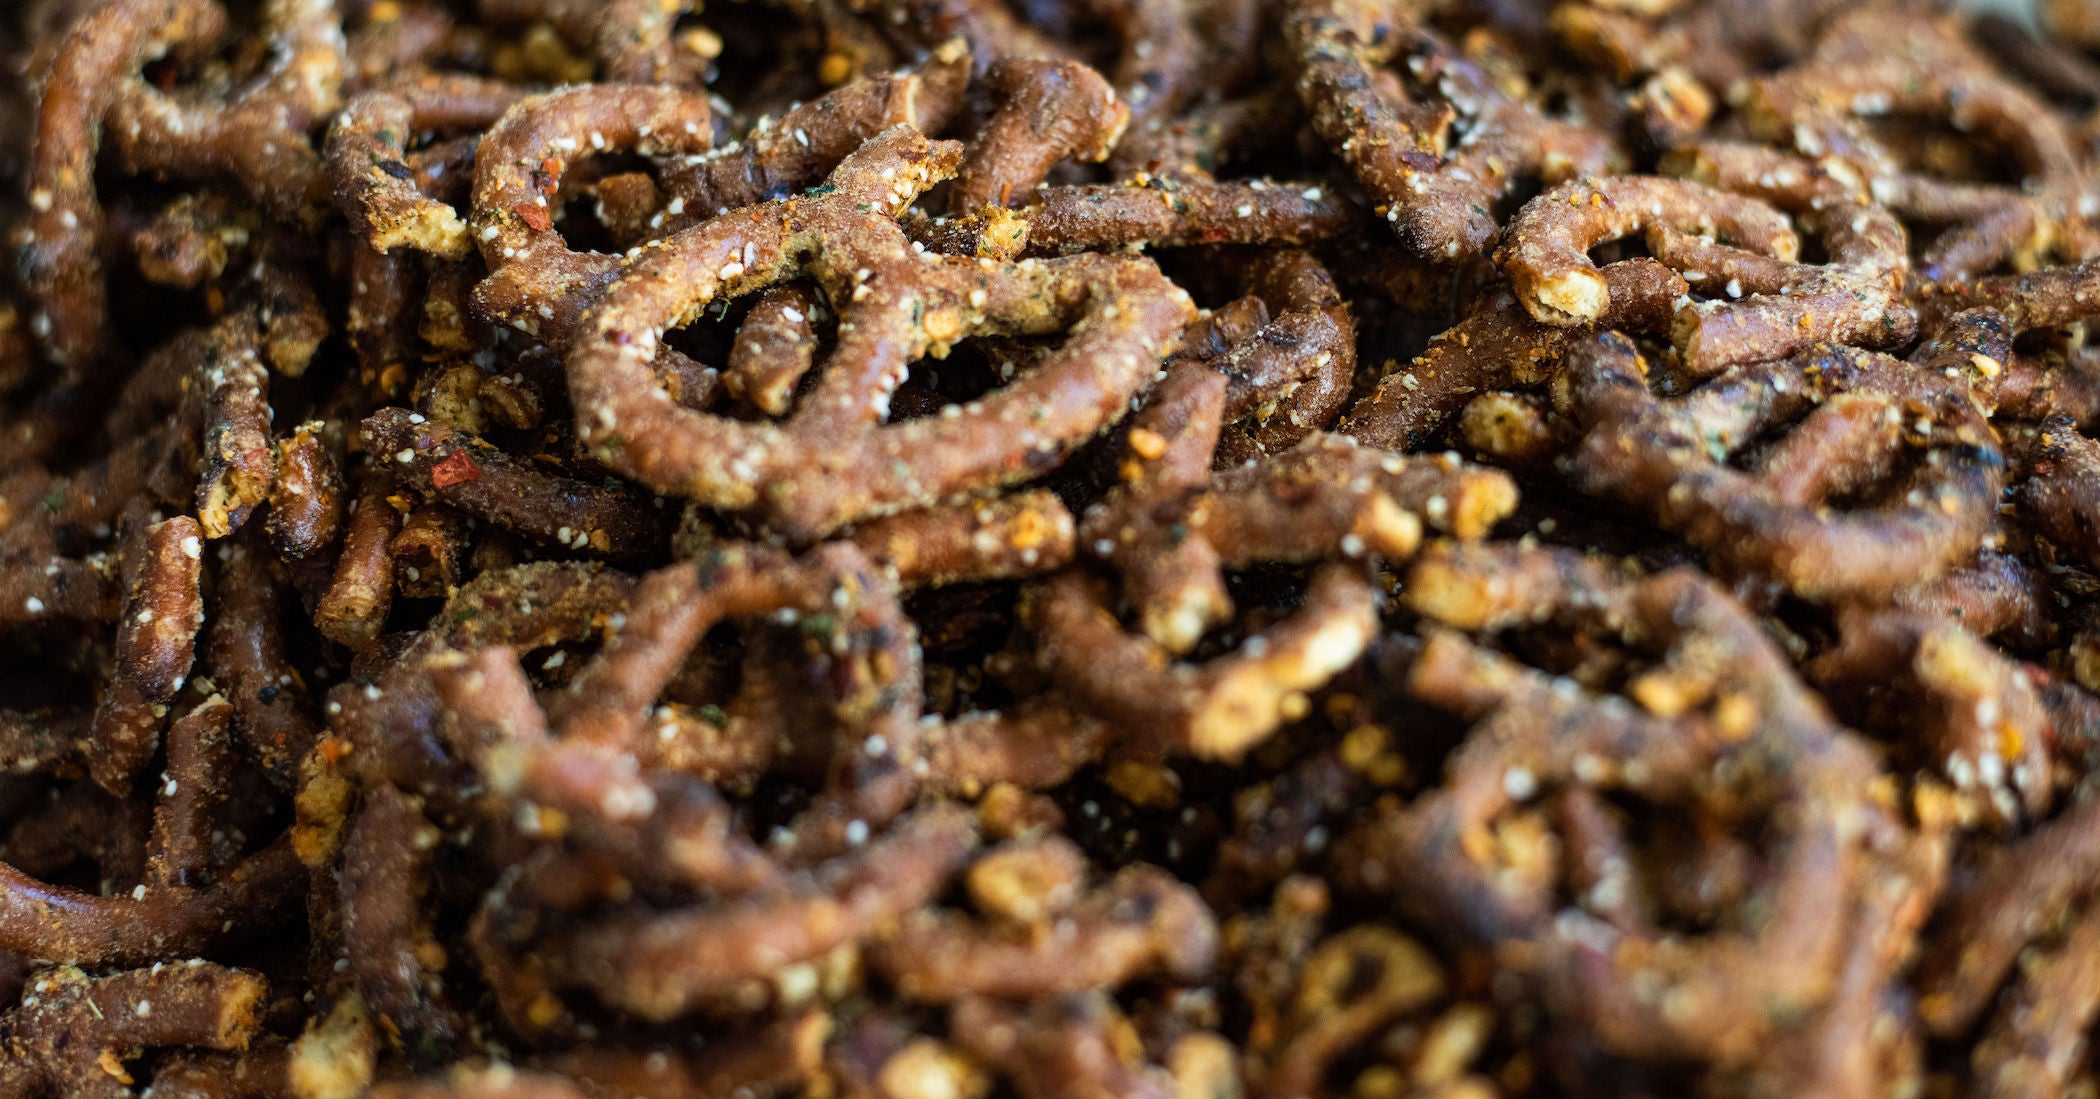 Pile of pretzels seasoned with "OG" spices